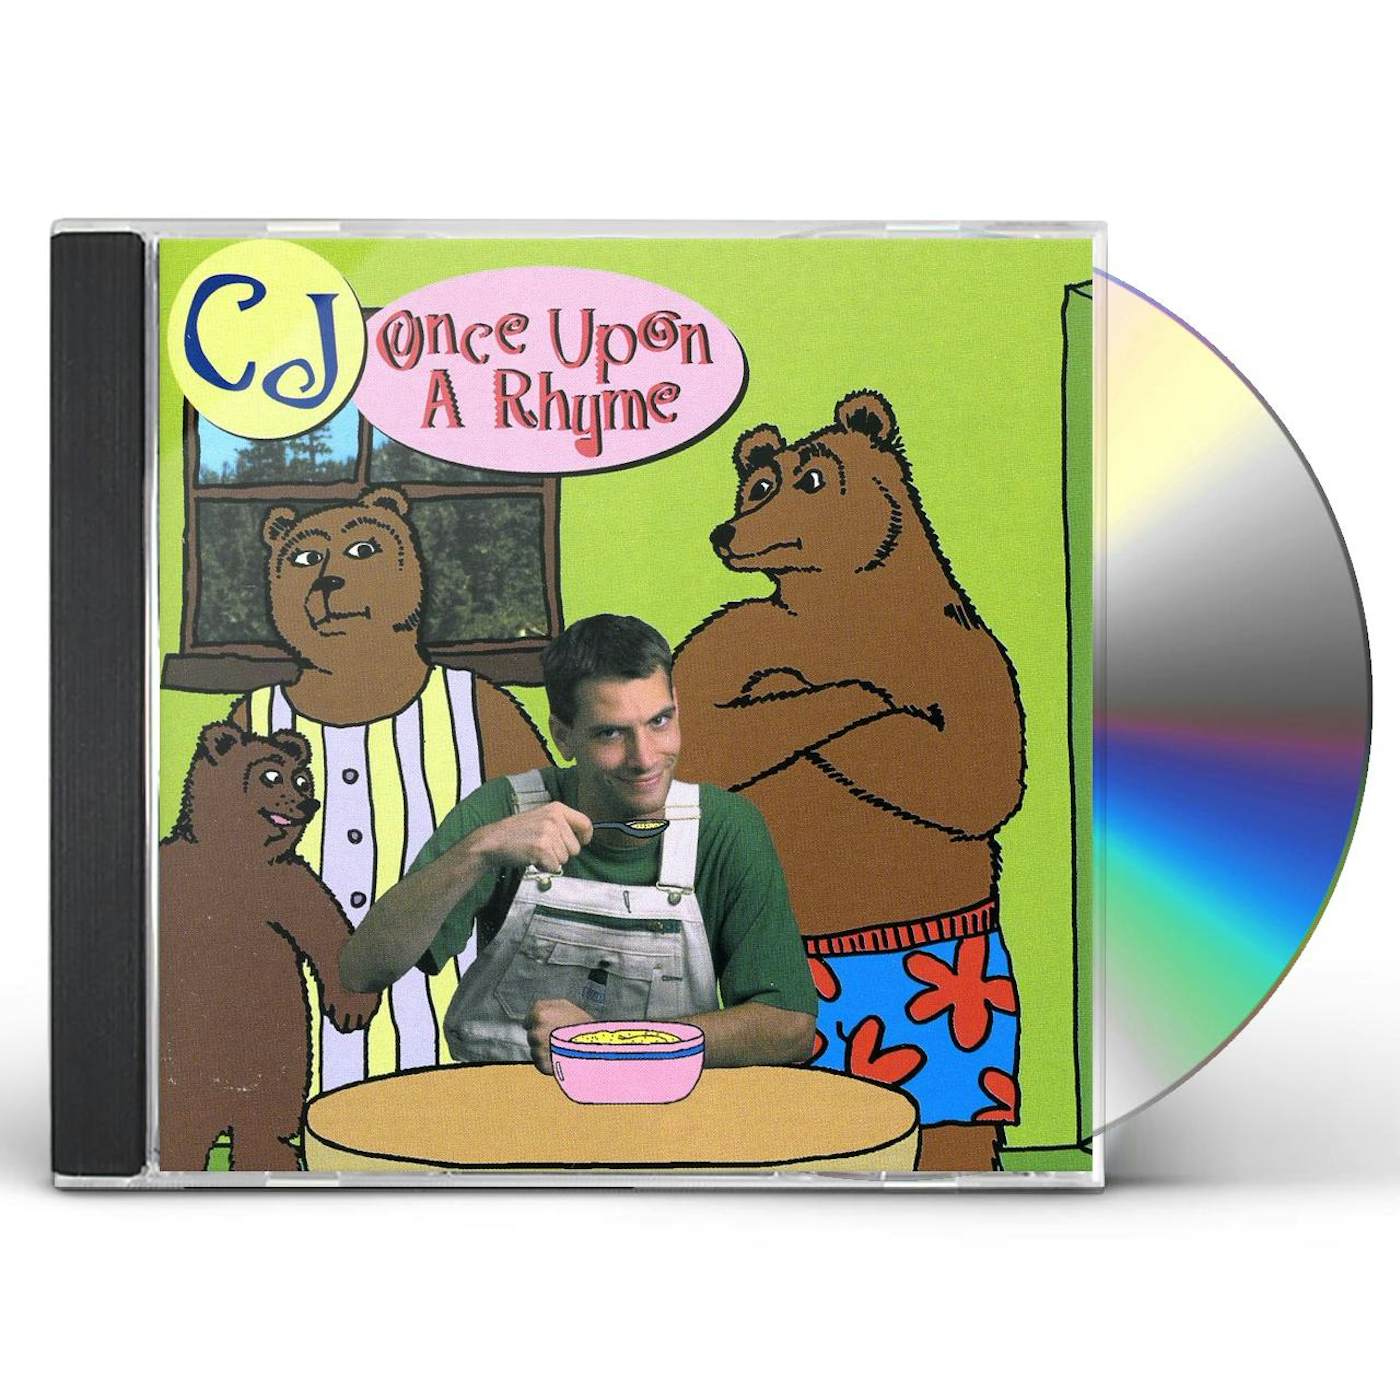 CJ ONCE UPON A RHYME CD